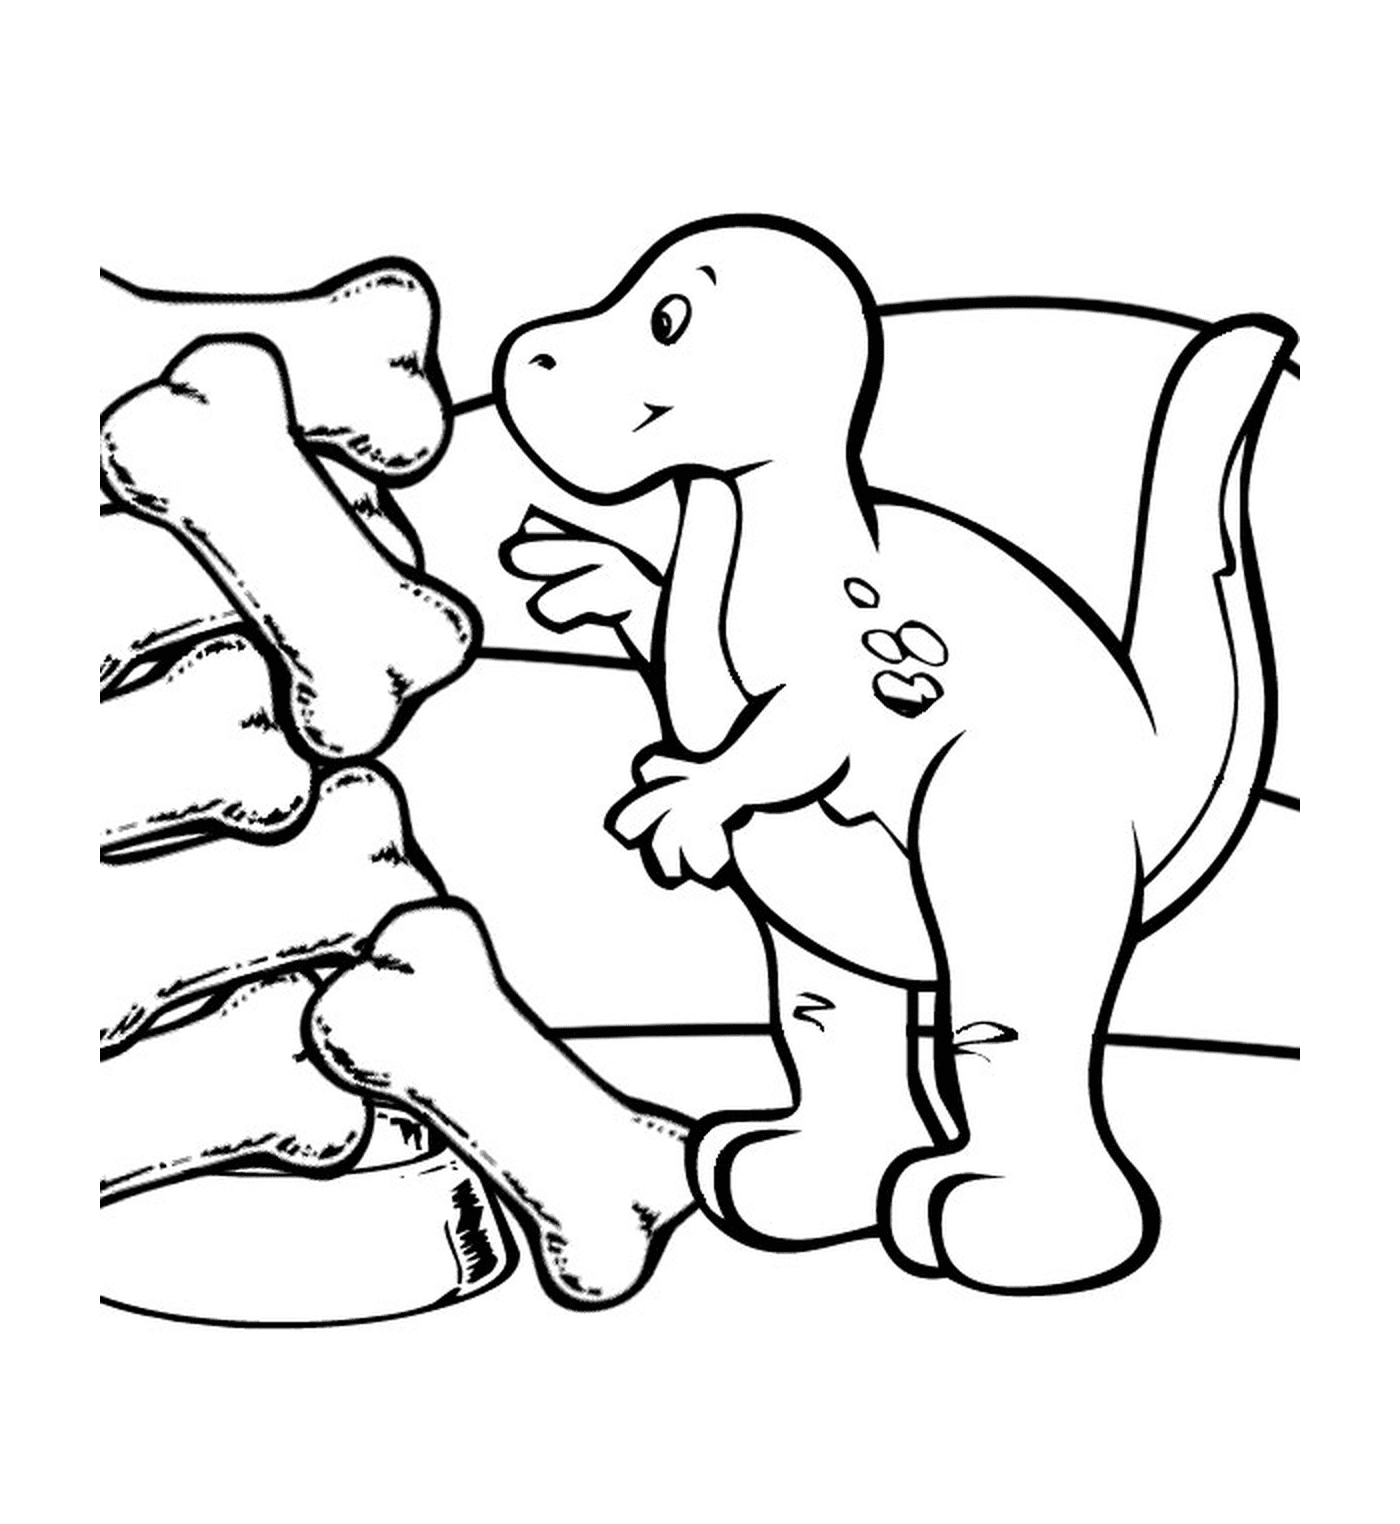  Dinosauro accanto alle ossa fossilizzate 